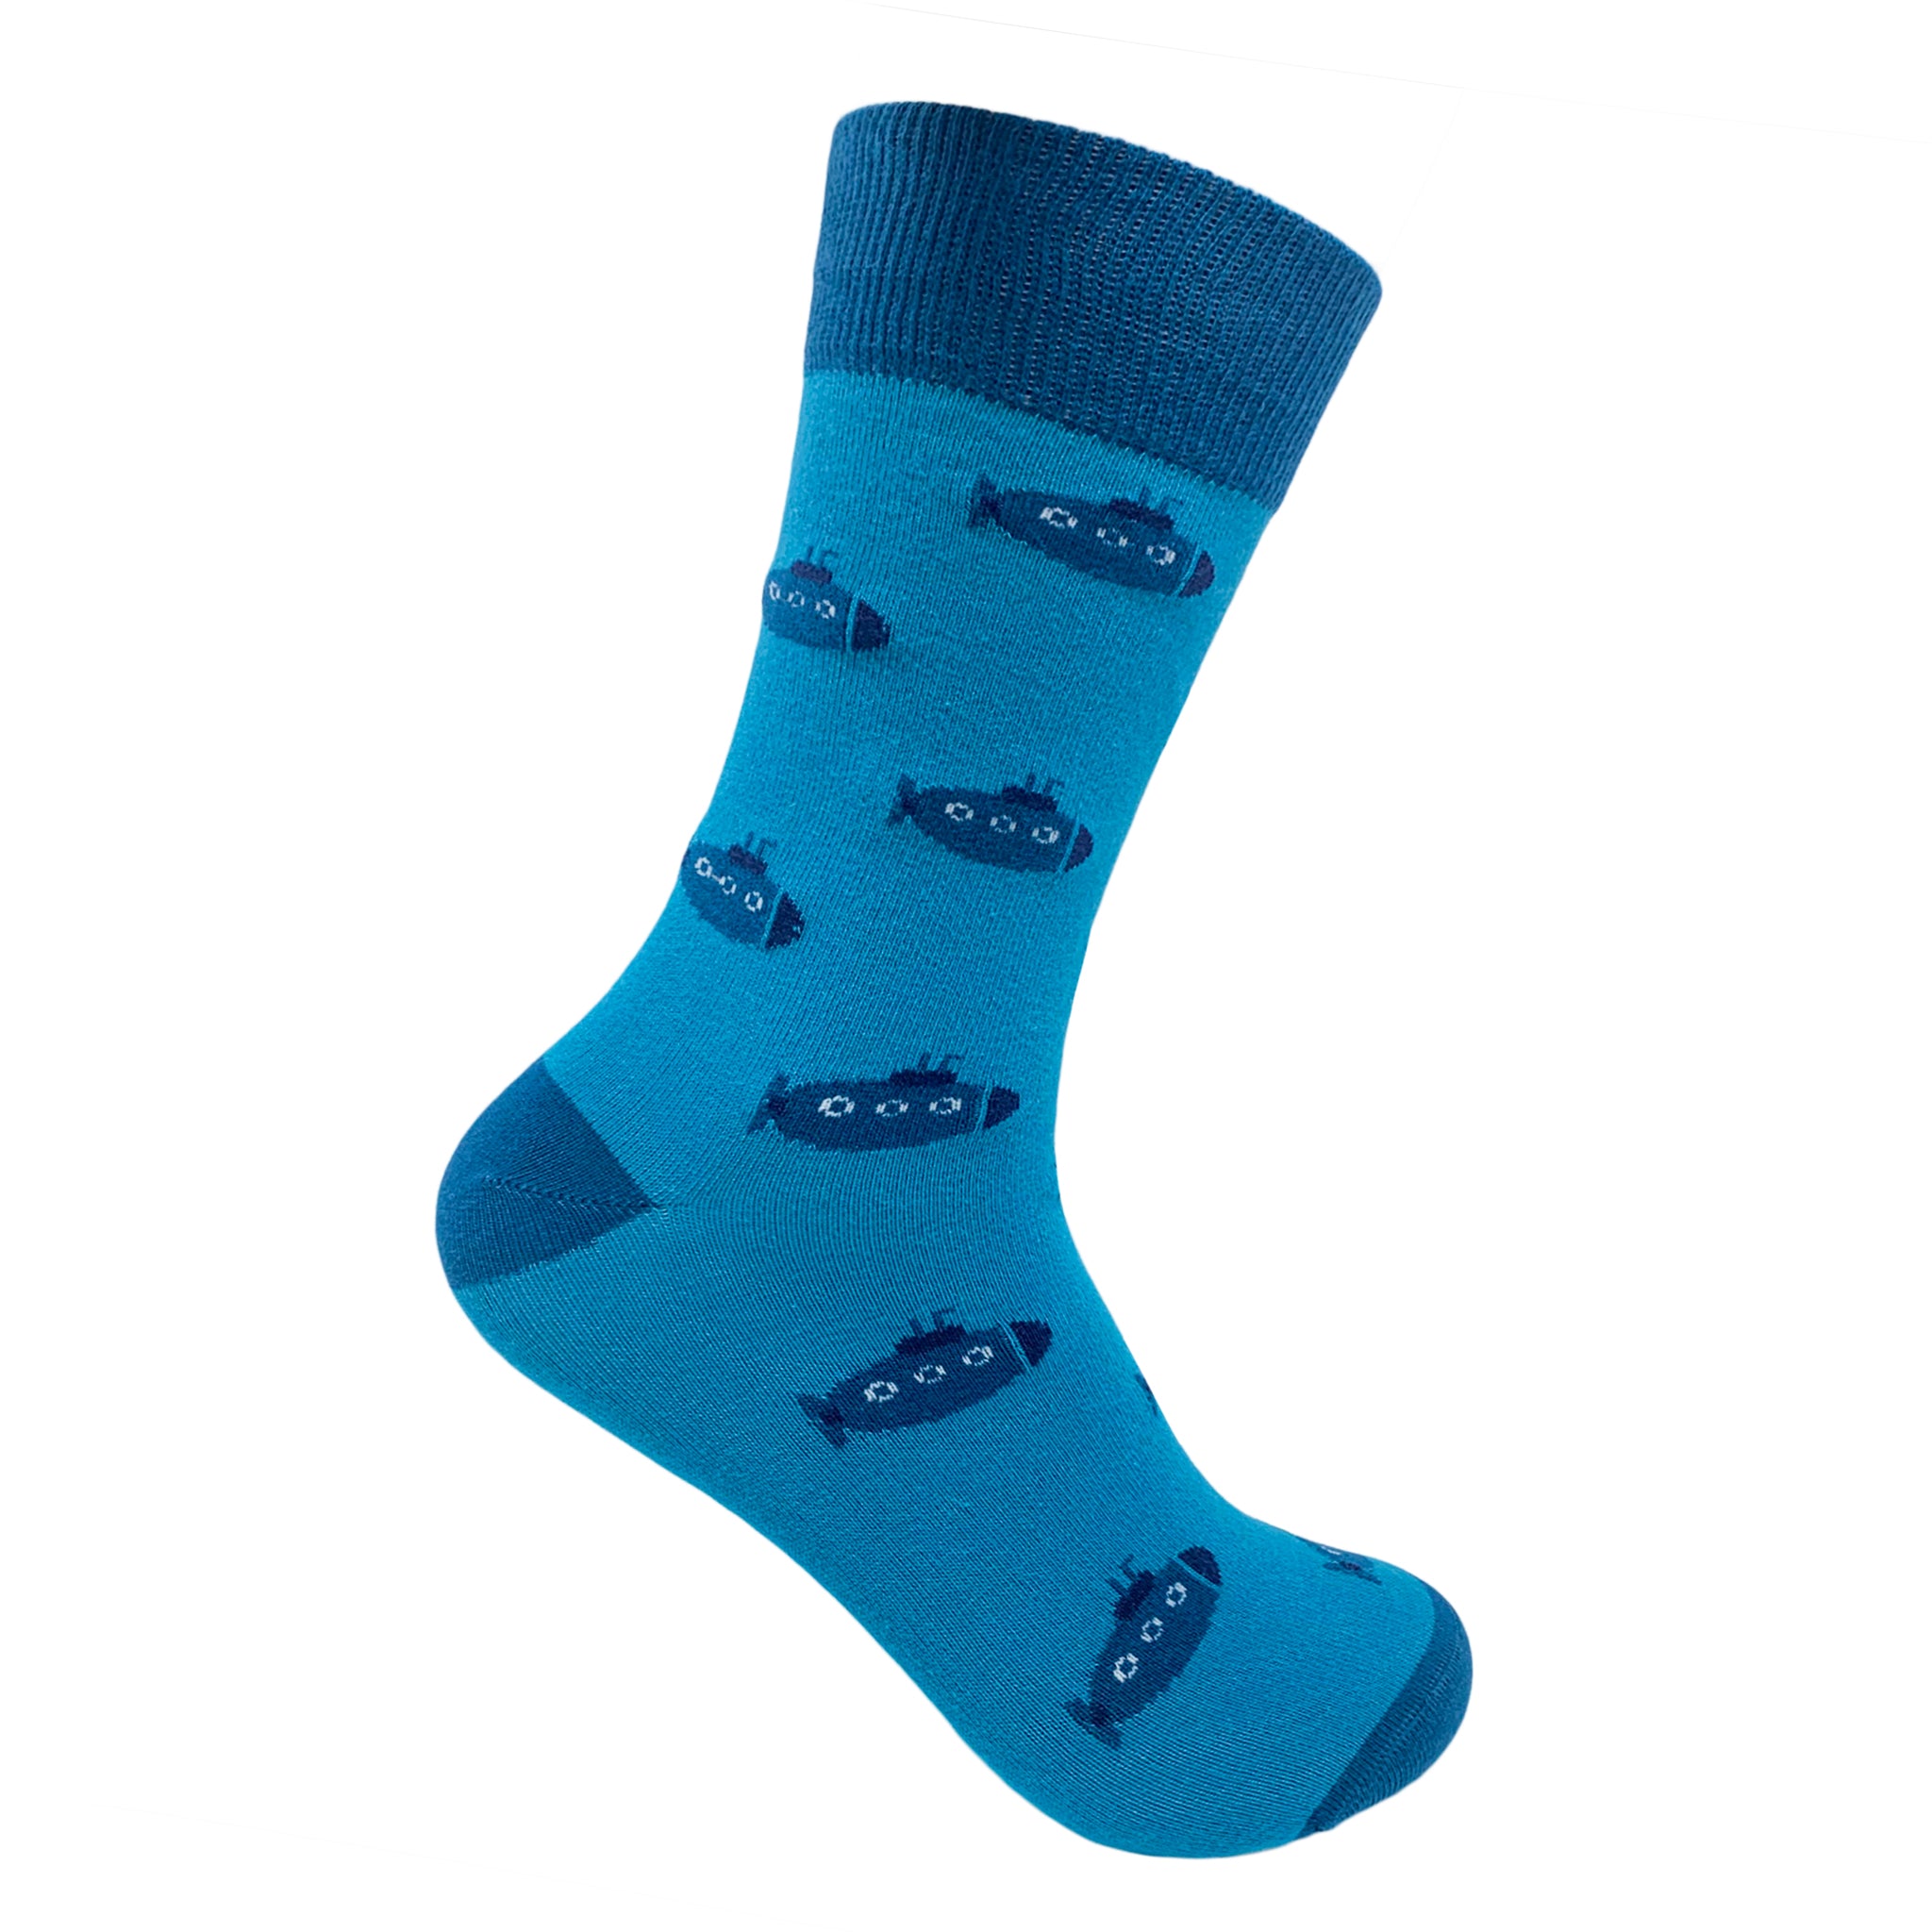 Submarine Socks For Men